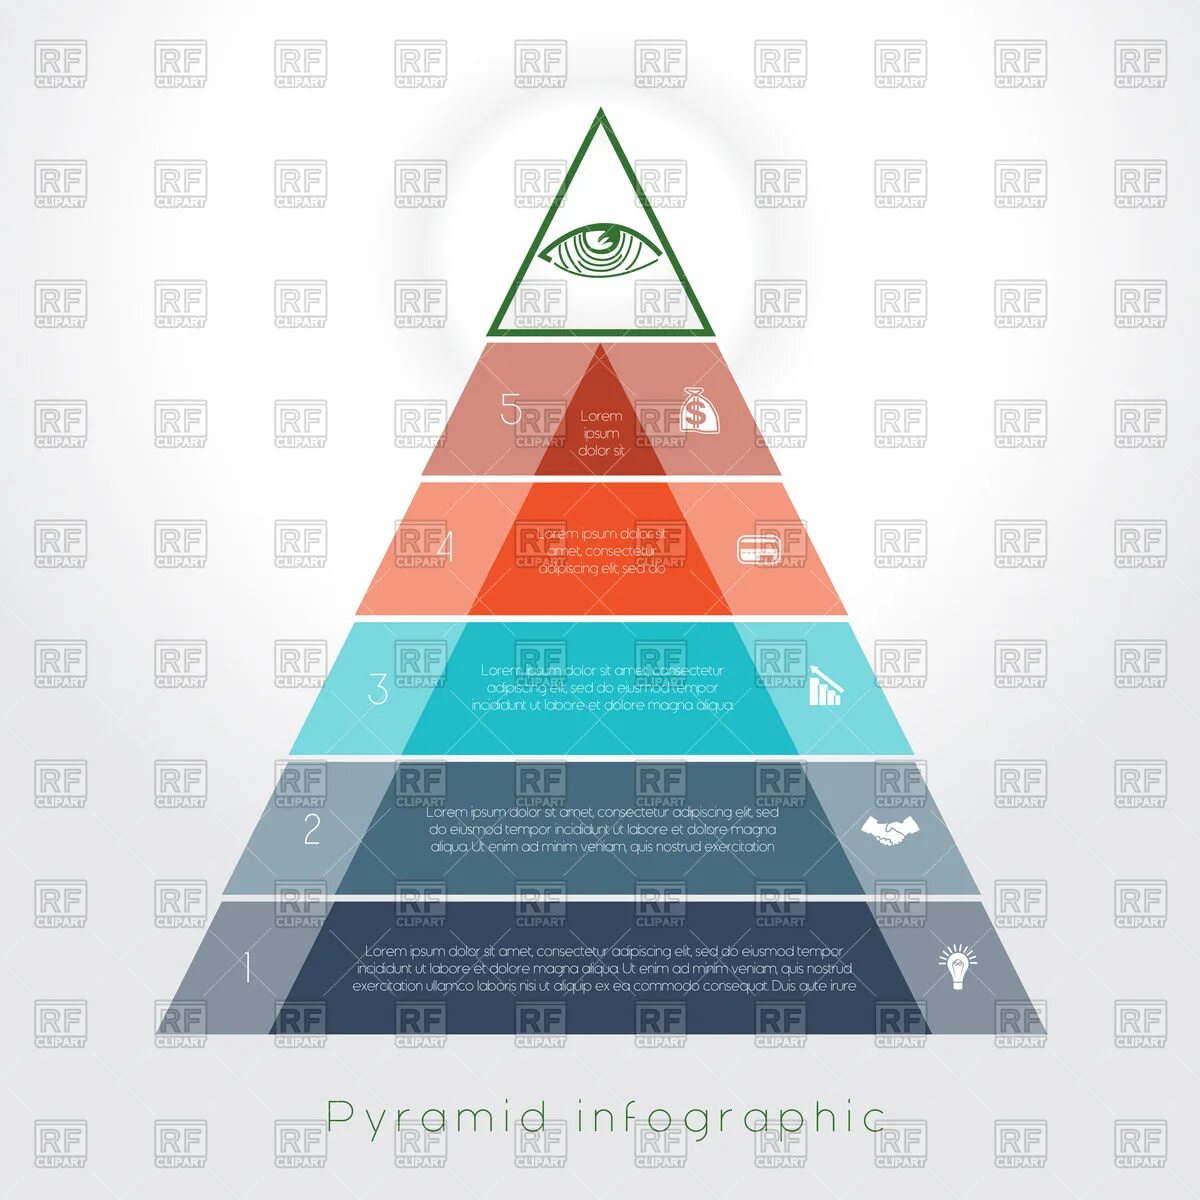 На следующий уровень а также. Пирамида инфографика. Бизнес-инфографика пирамида управления. Бизнес-инфографика охватывает следующие уровни пирамиды управления:. Пирамида уровней управления картинки.